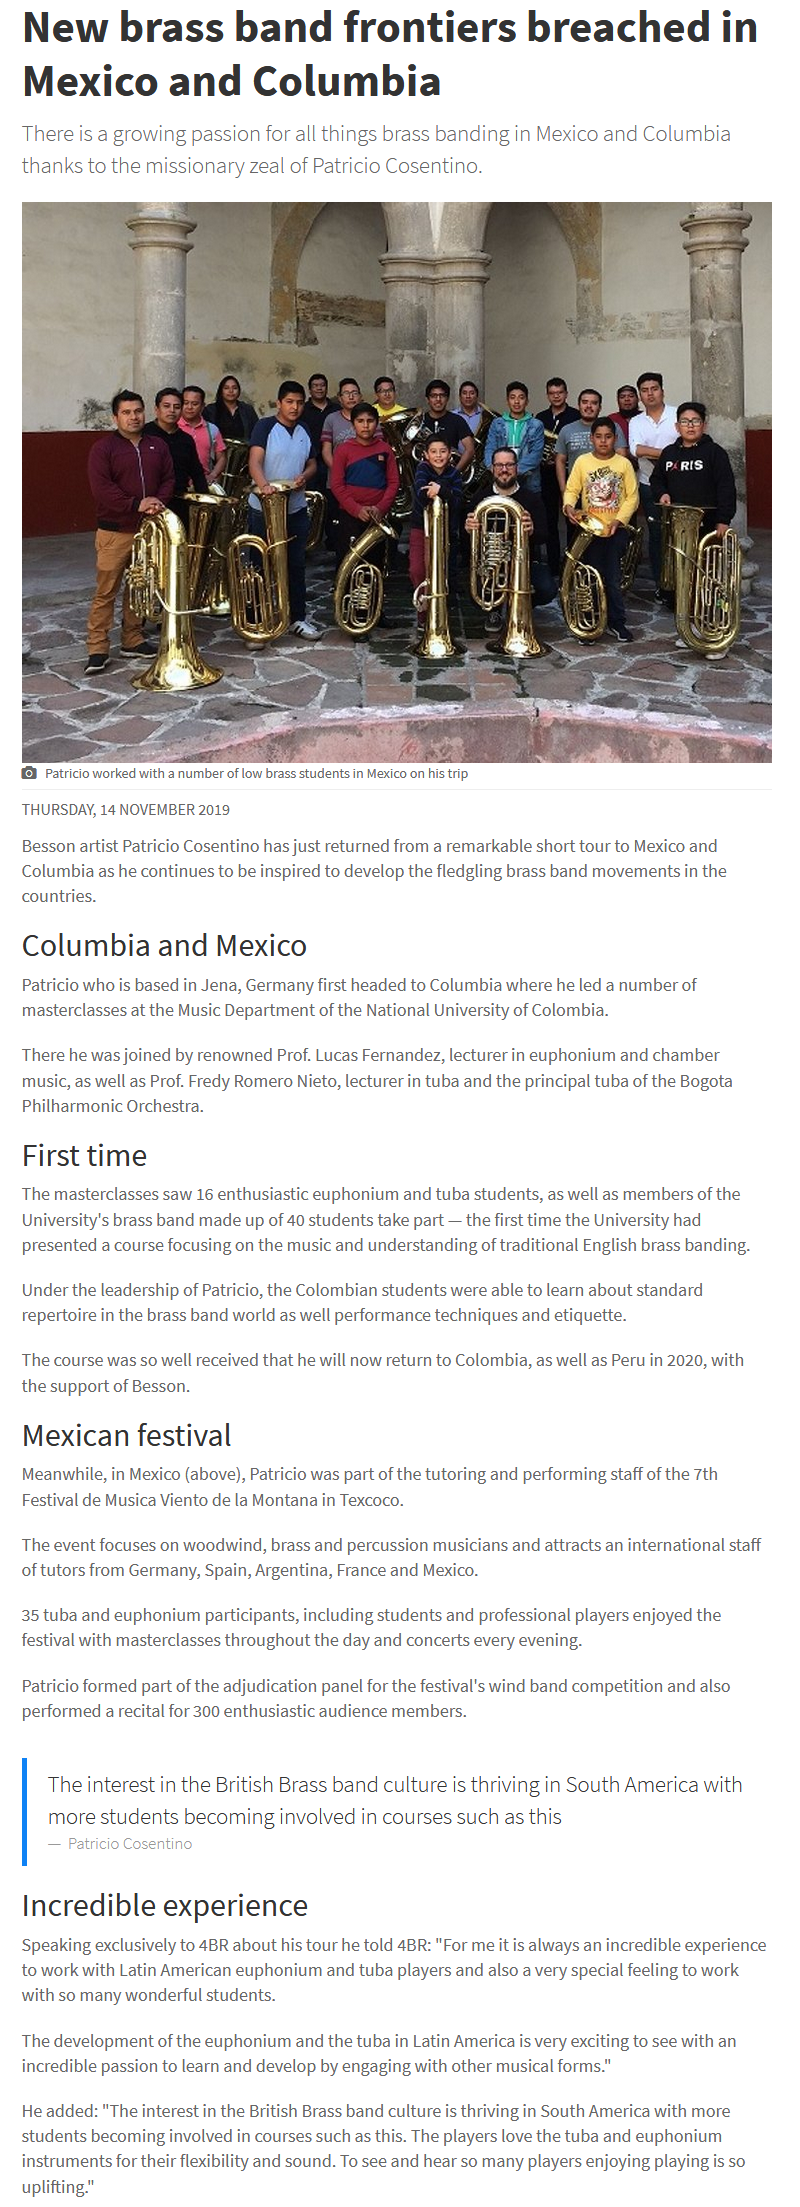 Artikel 4barsrest über die Konzertreise von Patricio Cosentino nach Mexiko und Kolumbien